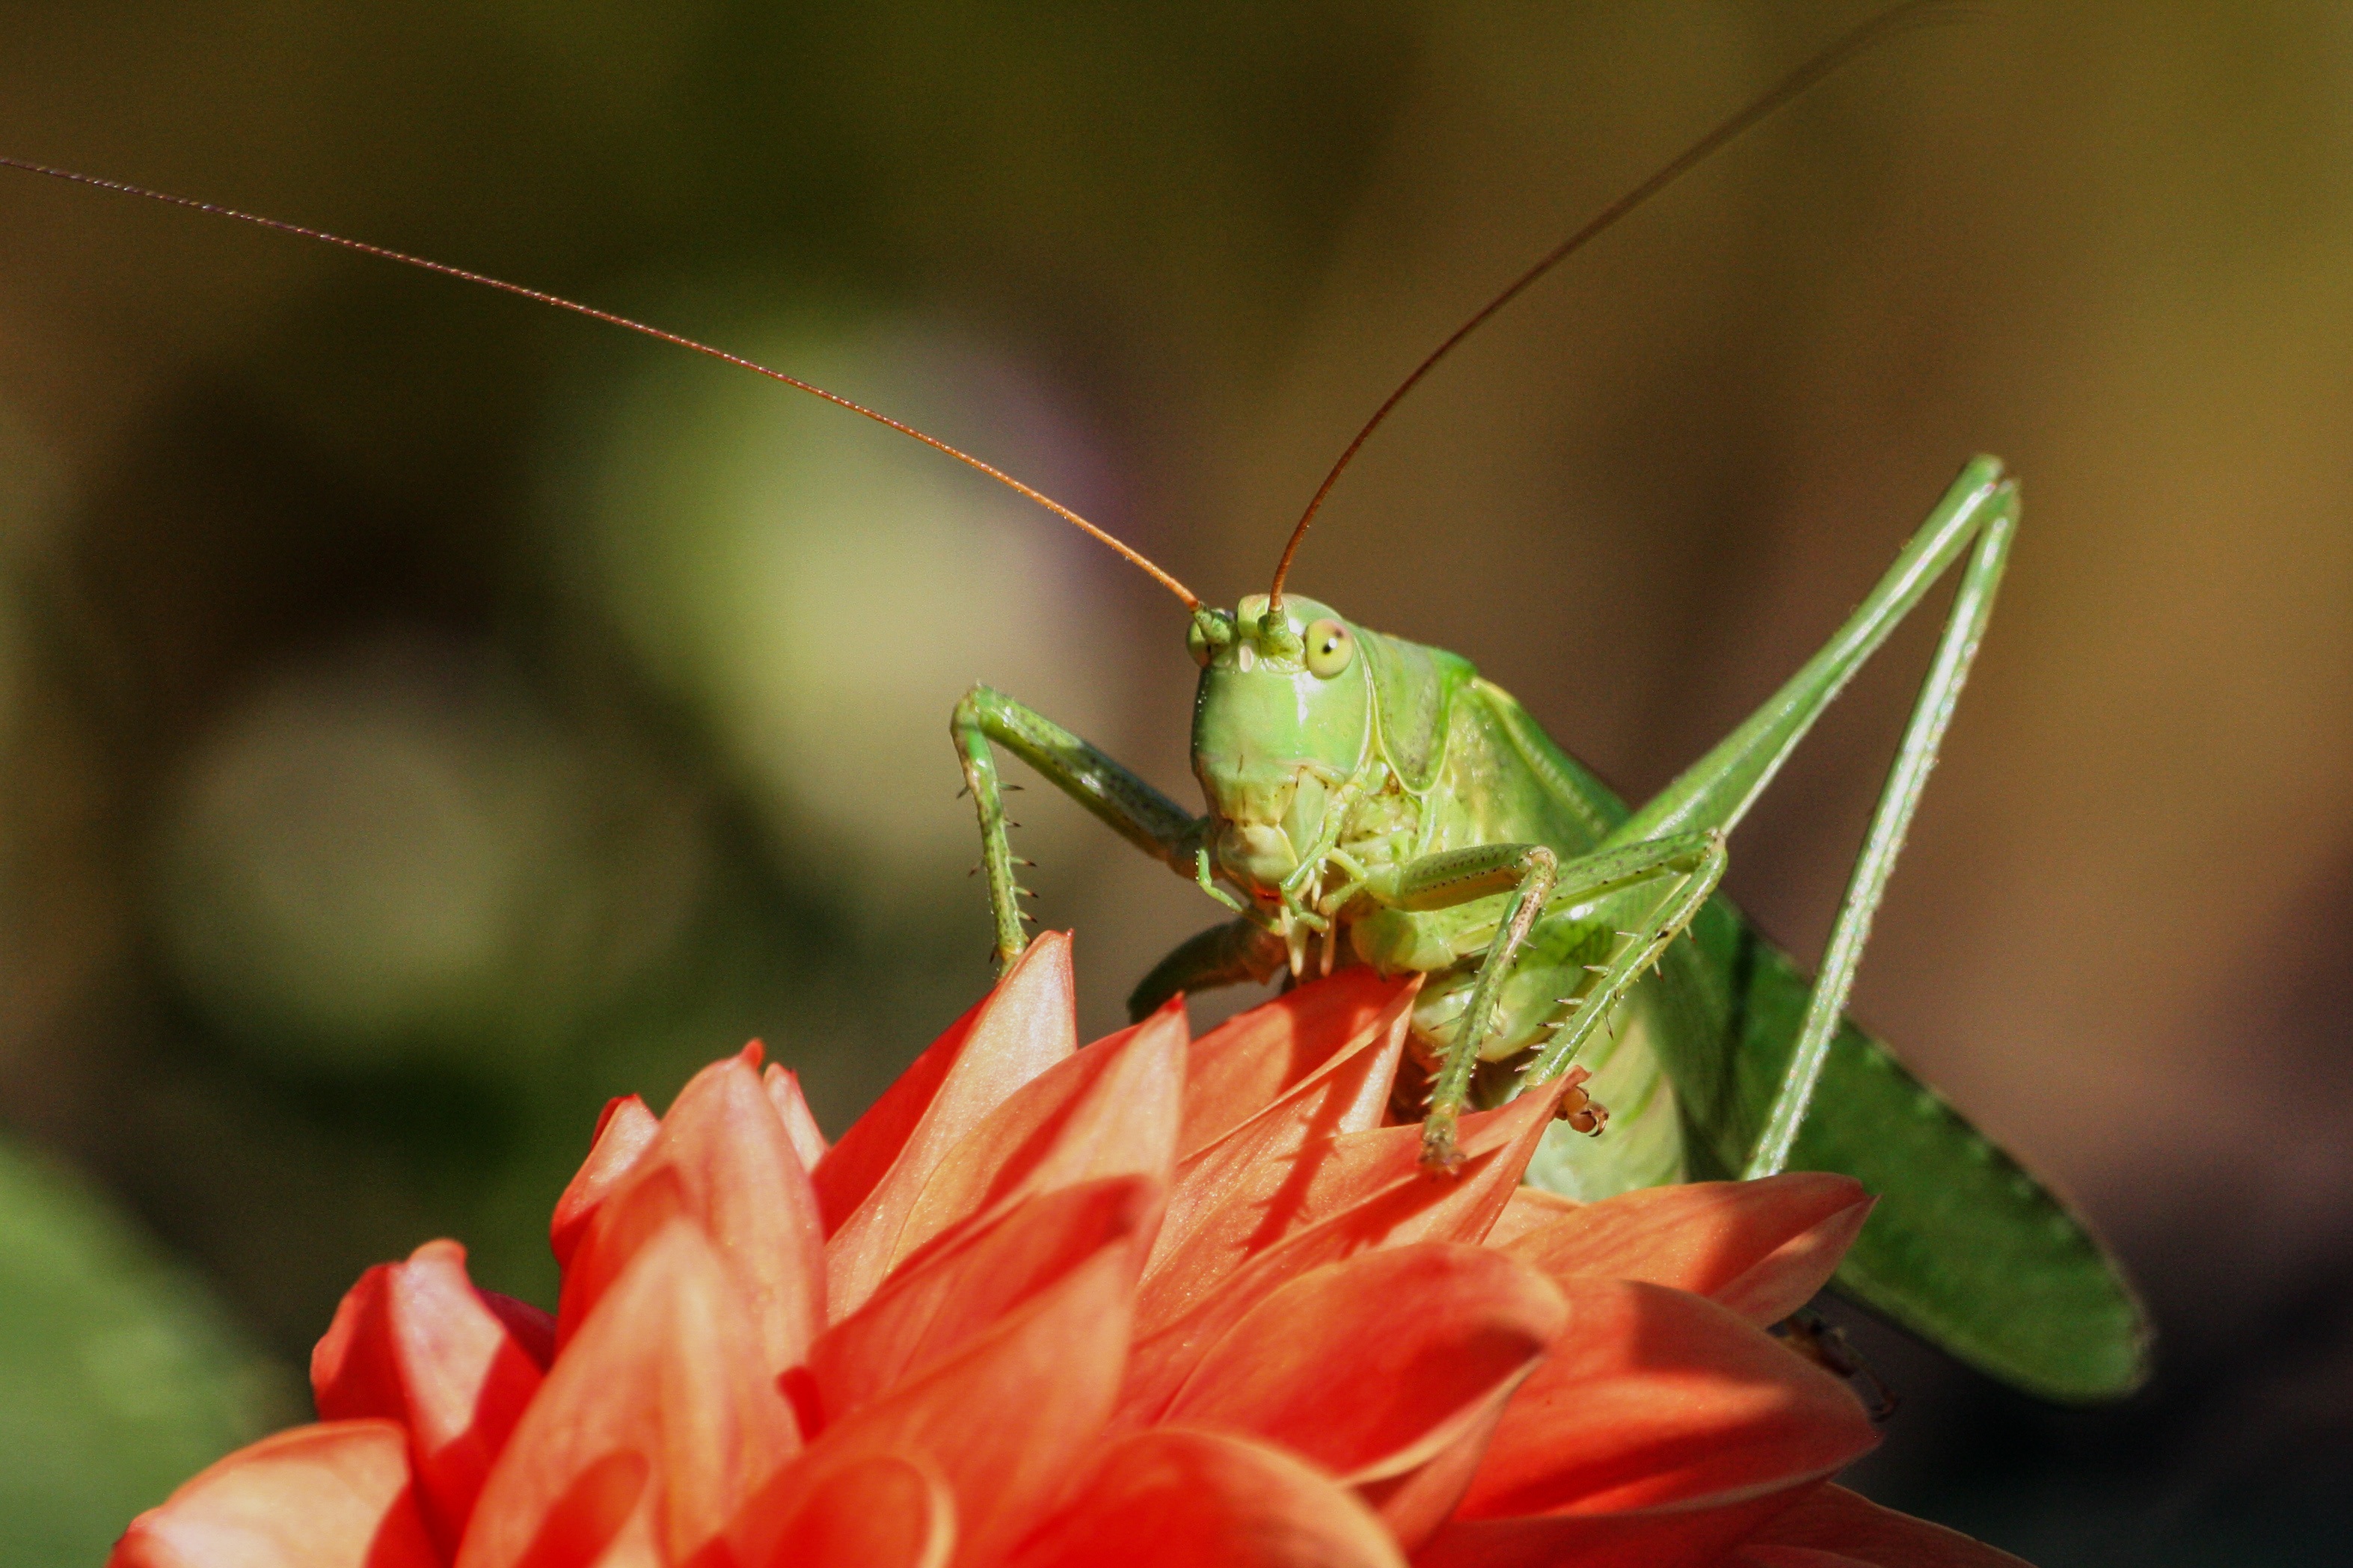 Wild grasshopper photo